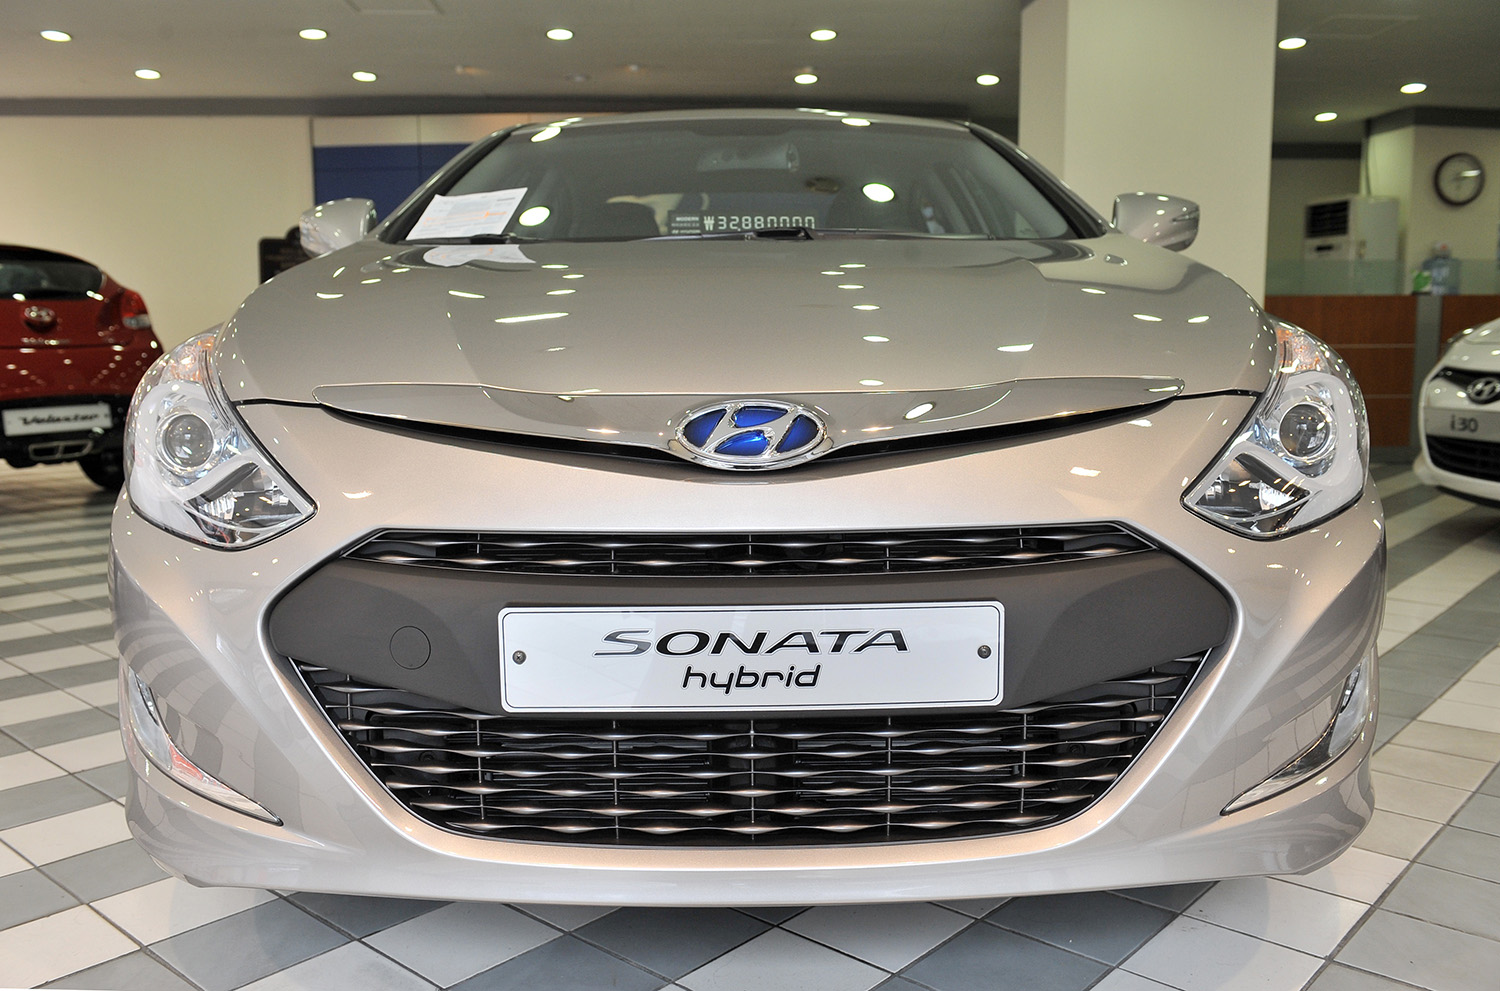 2013 Hyundai Sonata Hybrid Sedan at dealership in Seoul South Korea